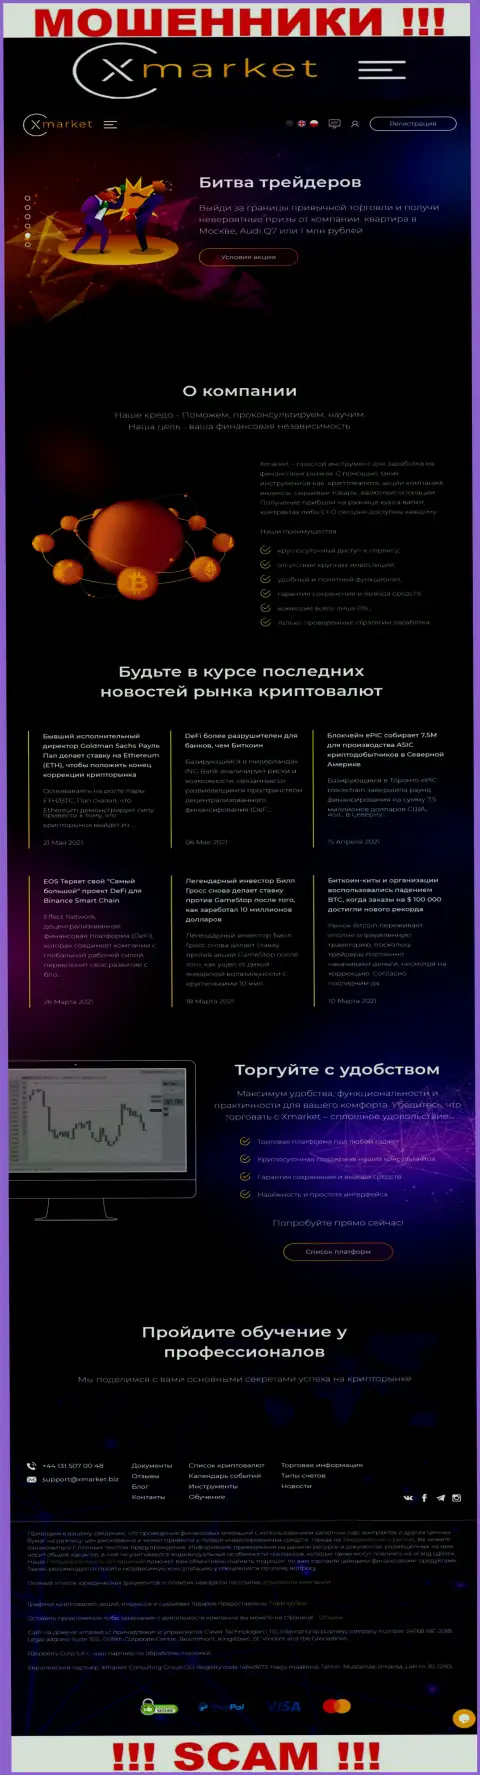 Официальный сайт интернет-мошенников и шулеров конторы Х Маркет